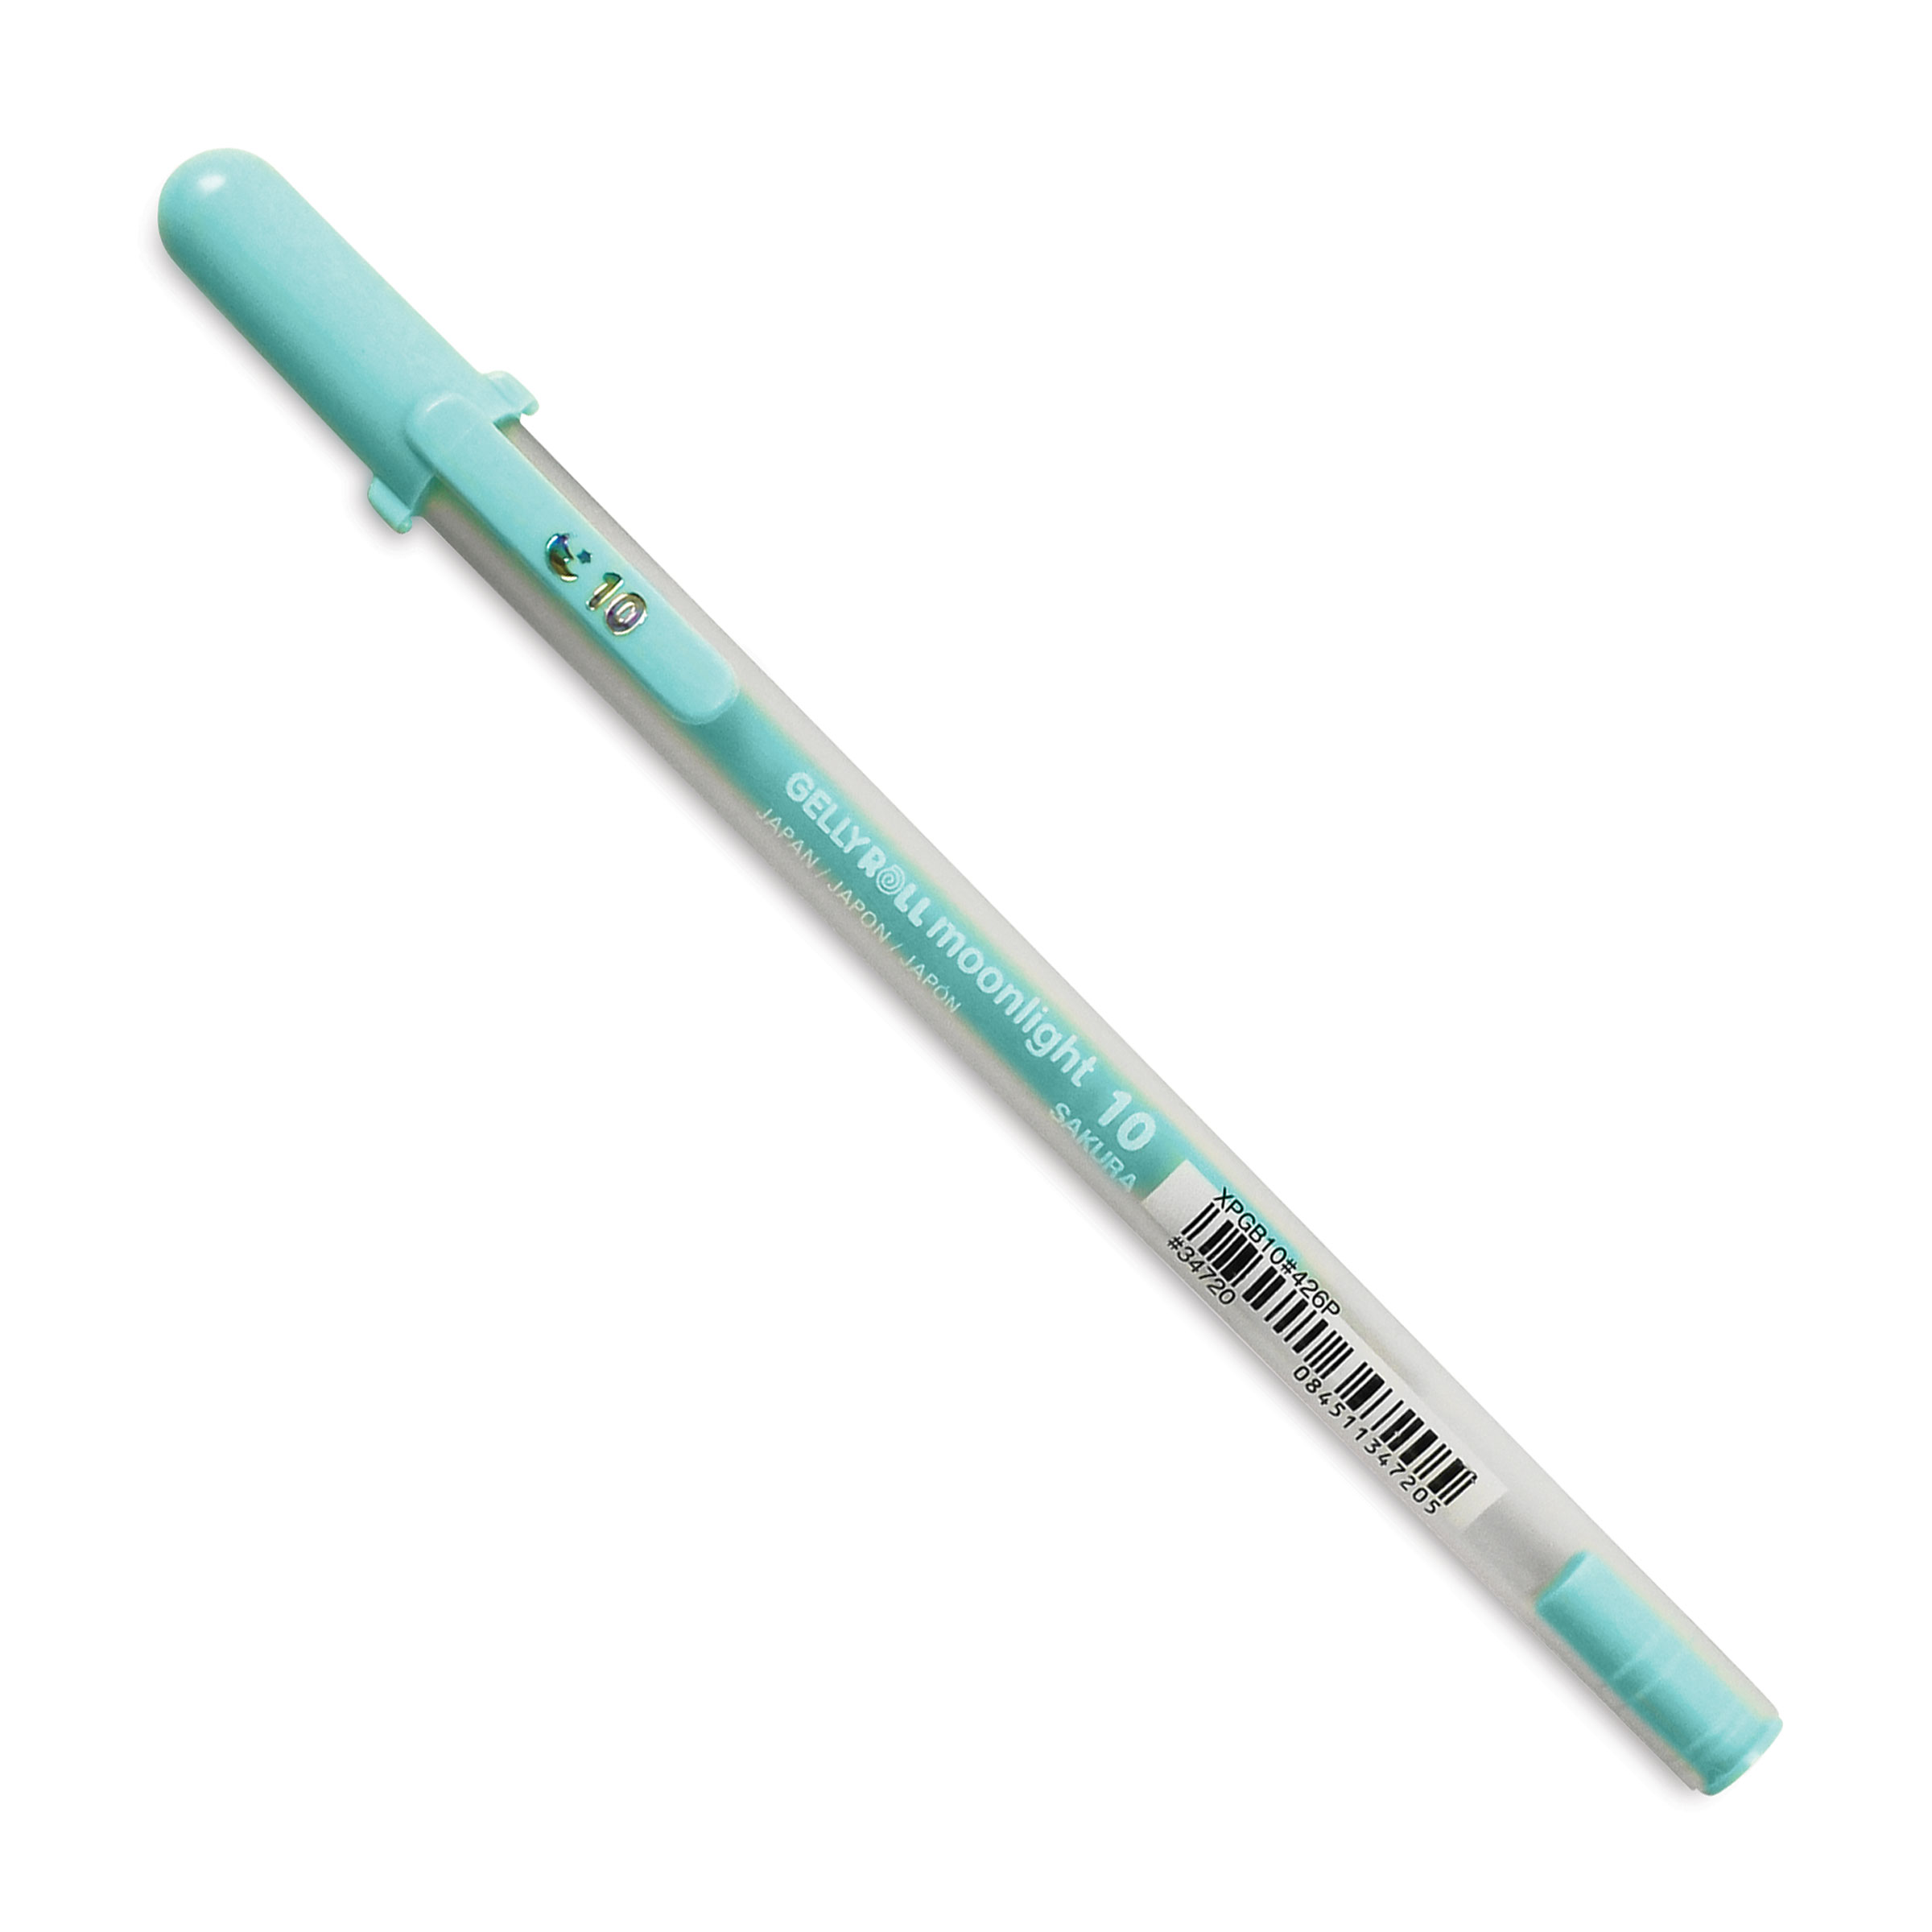 Sakura Gelly Roll Moonlight Pen - Lavender, Fine Point